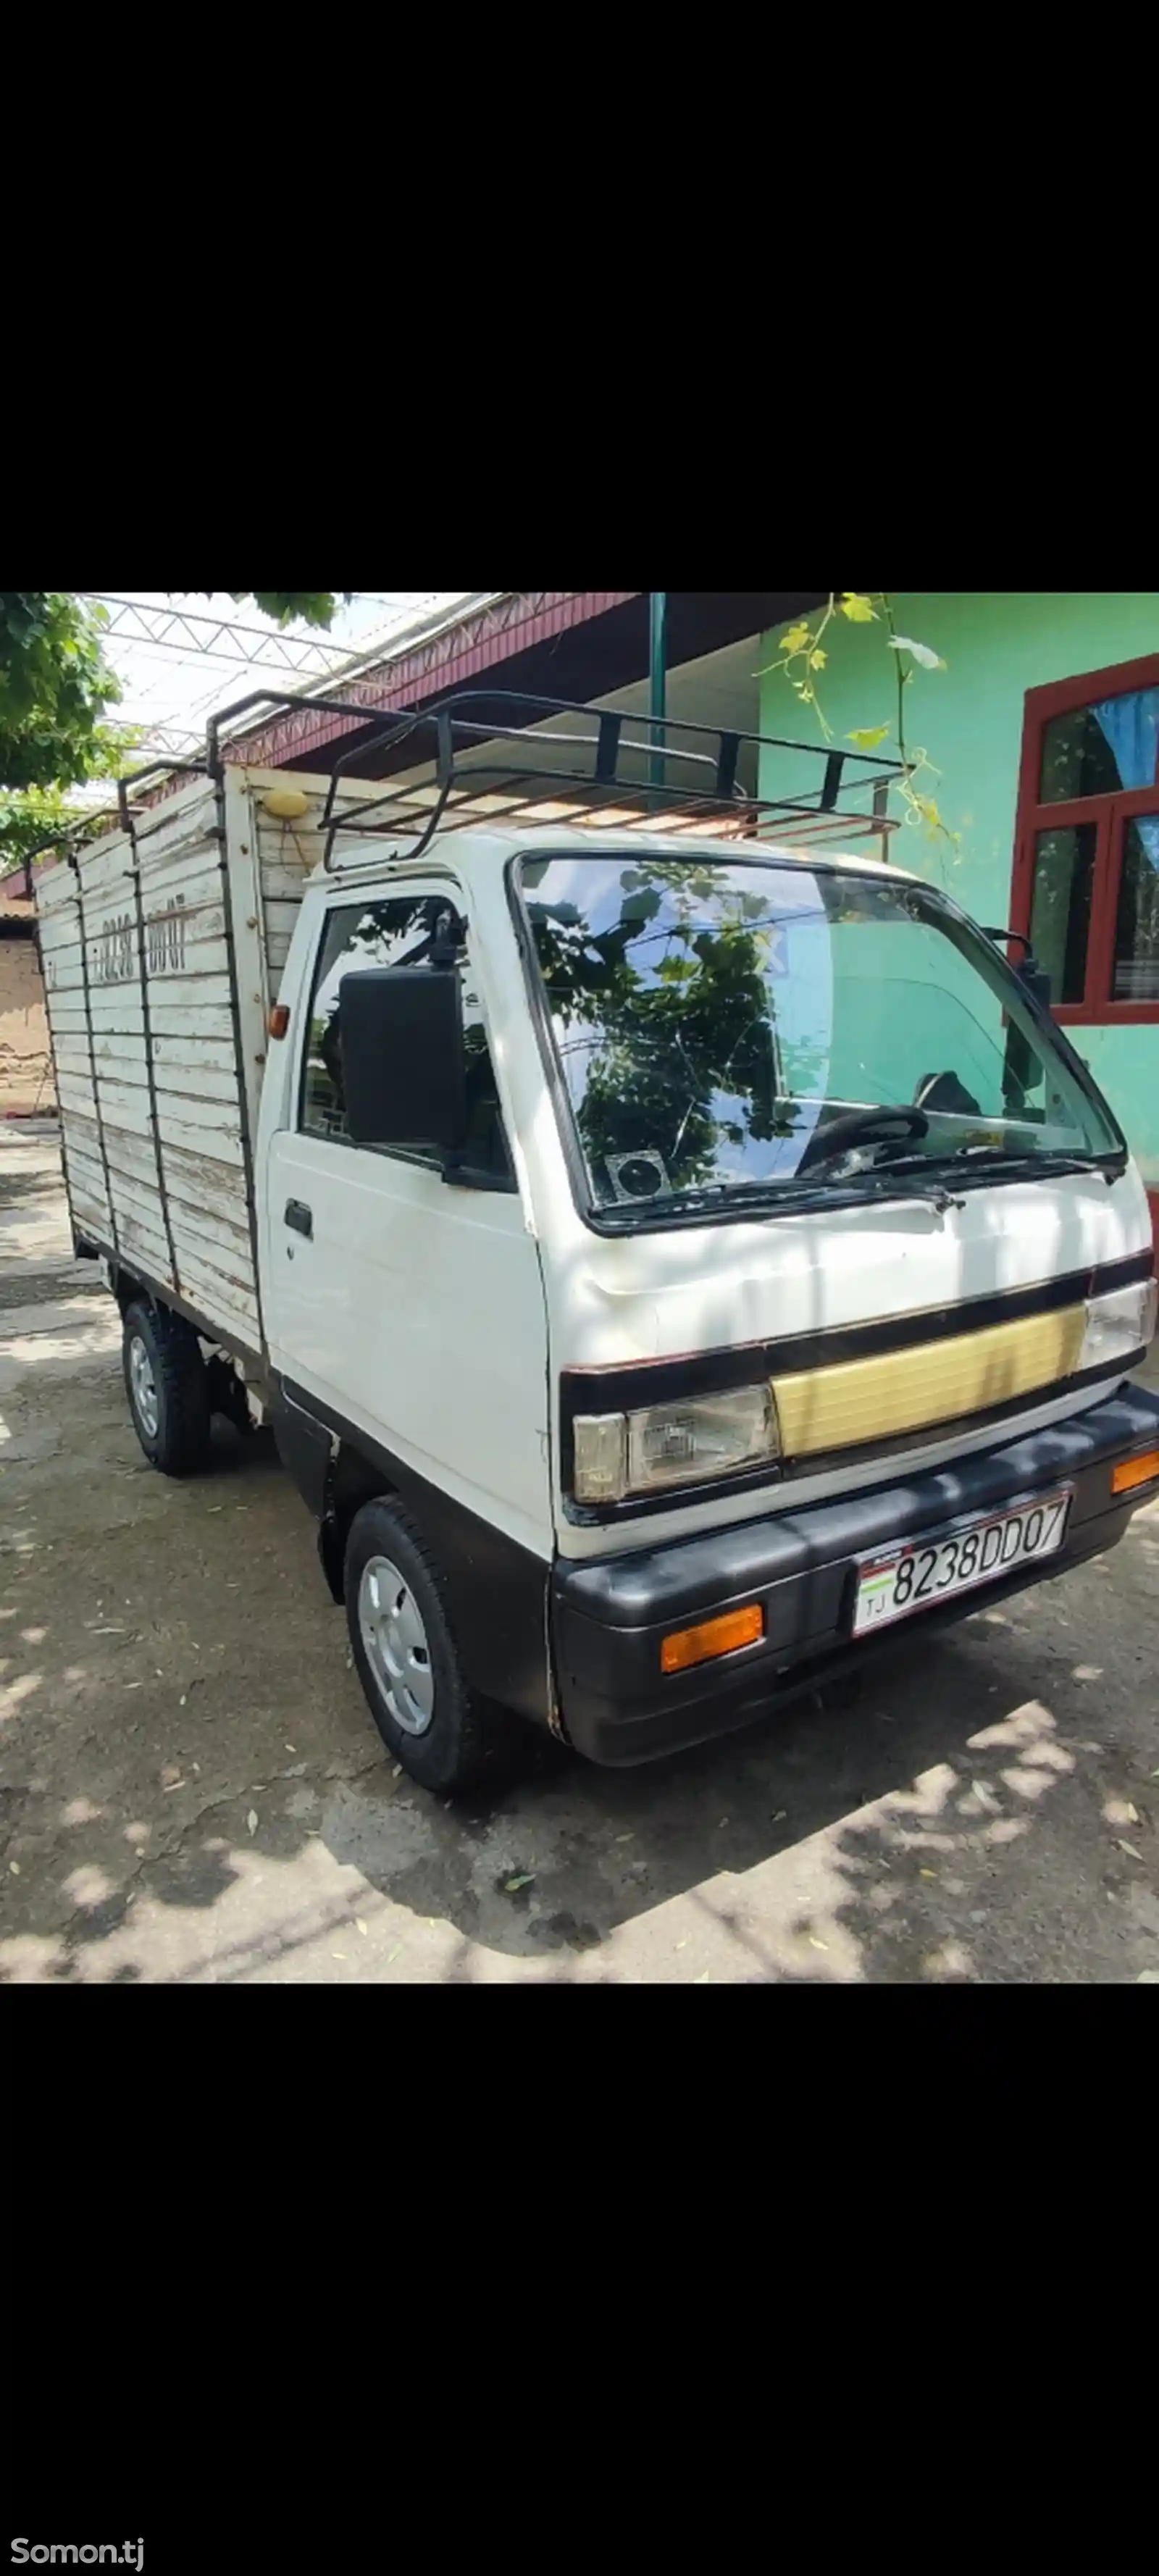 Бортовой автомобиль Daewoo Labo, 1998-1